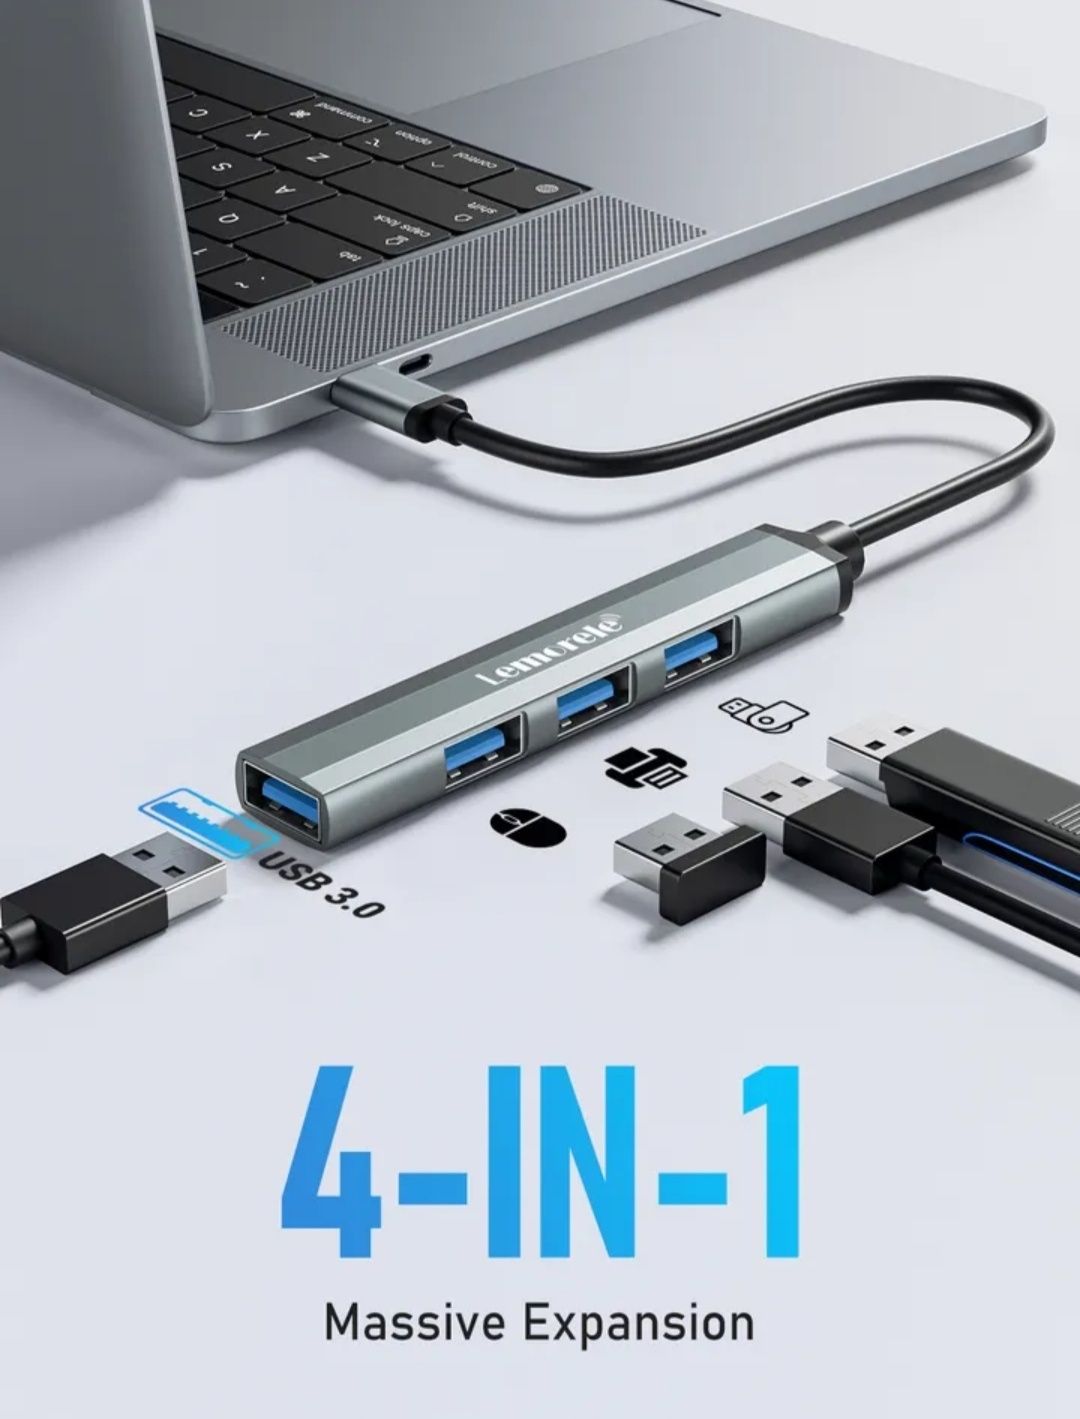 Новий USB hub Type C  або звичайний USB, фірми Lemorele,шикарна якість